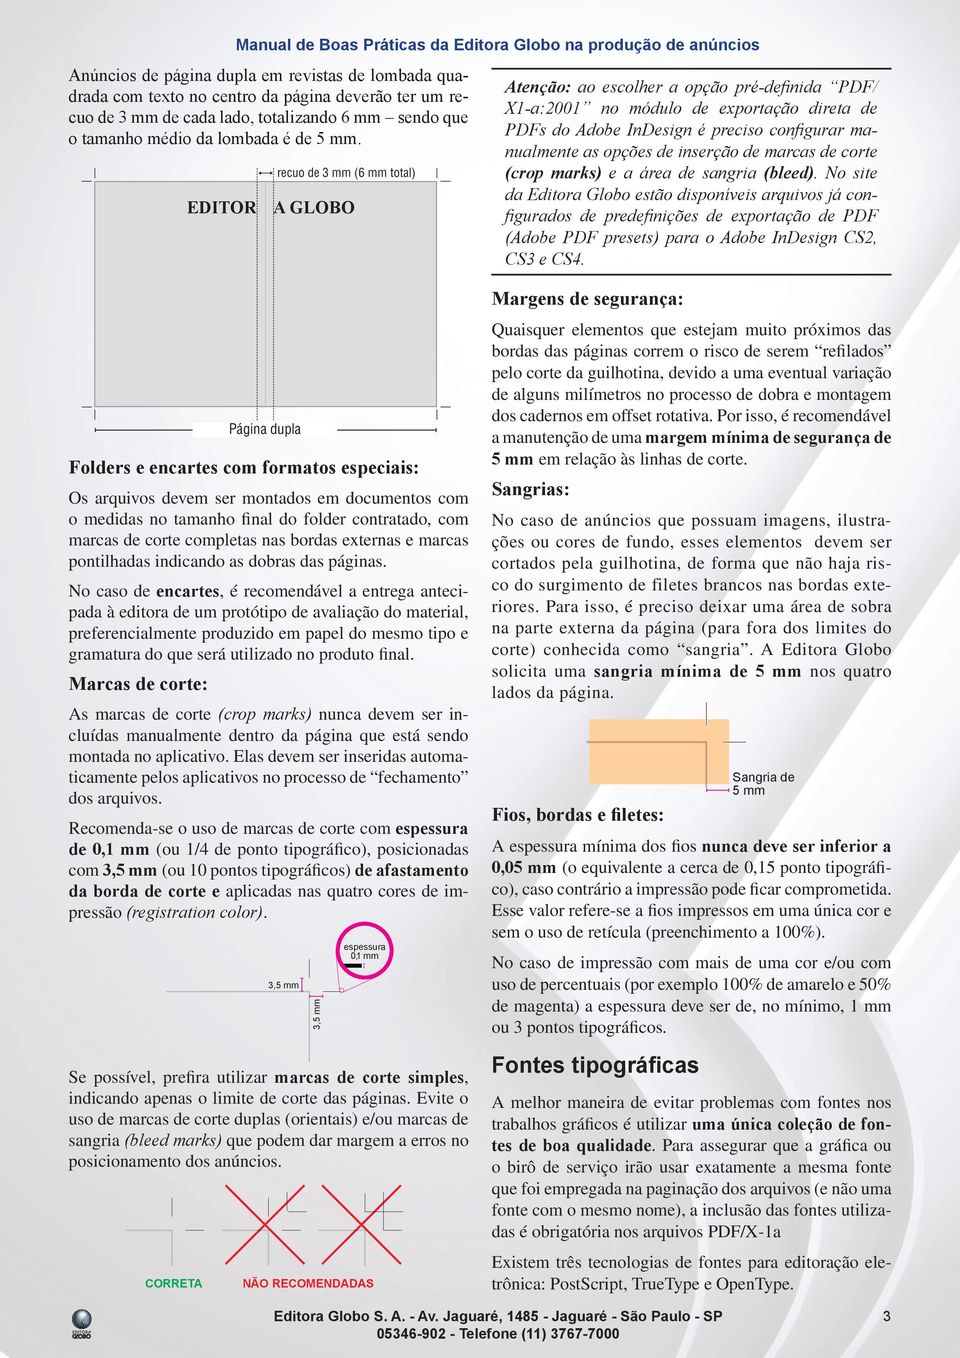 recuo de 3 mm (6 mm total) EDITOR A GLOBO Atenção: ao escolher a opção pré-defi nida PDF/ X1-a:2001 no módulo de exportação direta de PDFs do Adobe InDesign é preciso confi gurar manualmente as